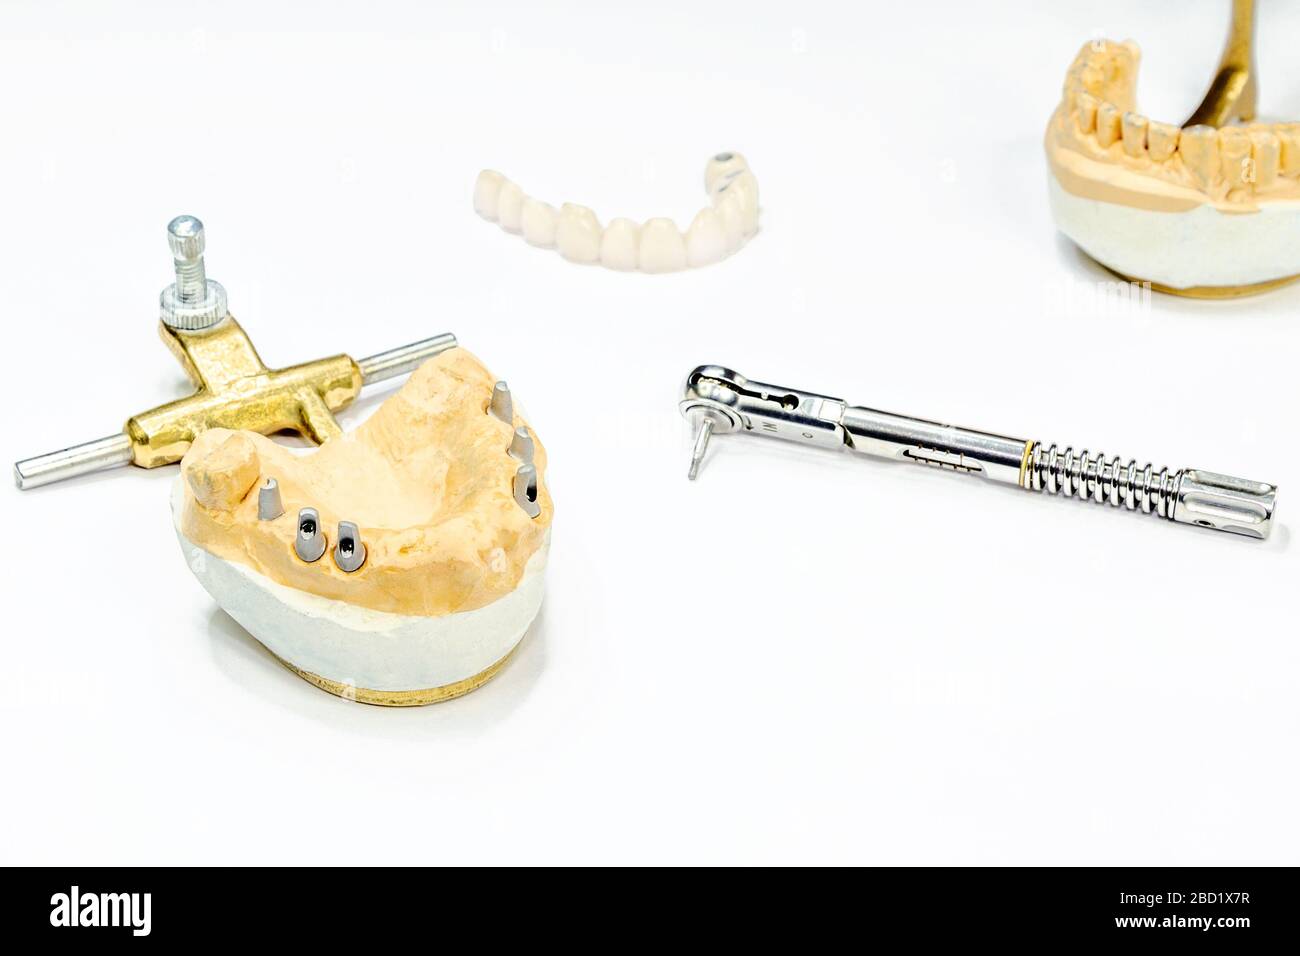 Der Prozess der Herstellung von keramischen Zähnen auf Implantaten. Zahnimplantate mit keramischen Zähnen auf einem hellen Hintergrund. Konzept der Zahnimplantation und d Stockfoto